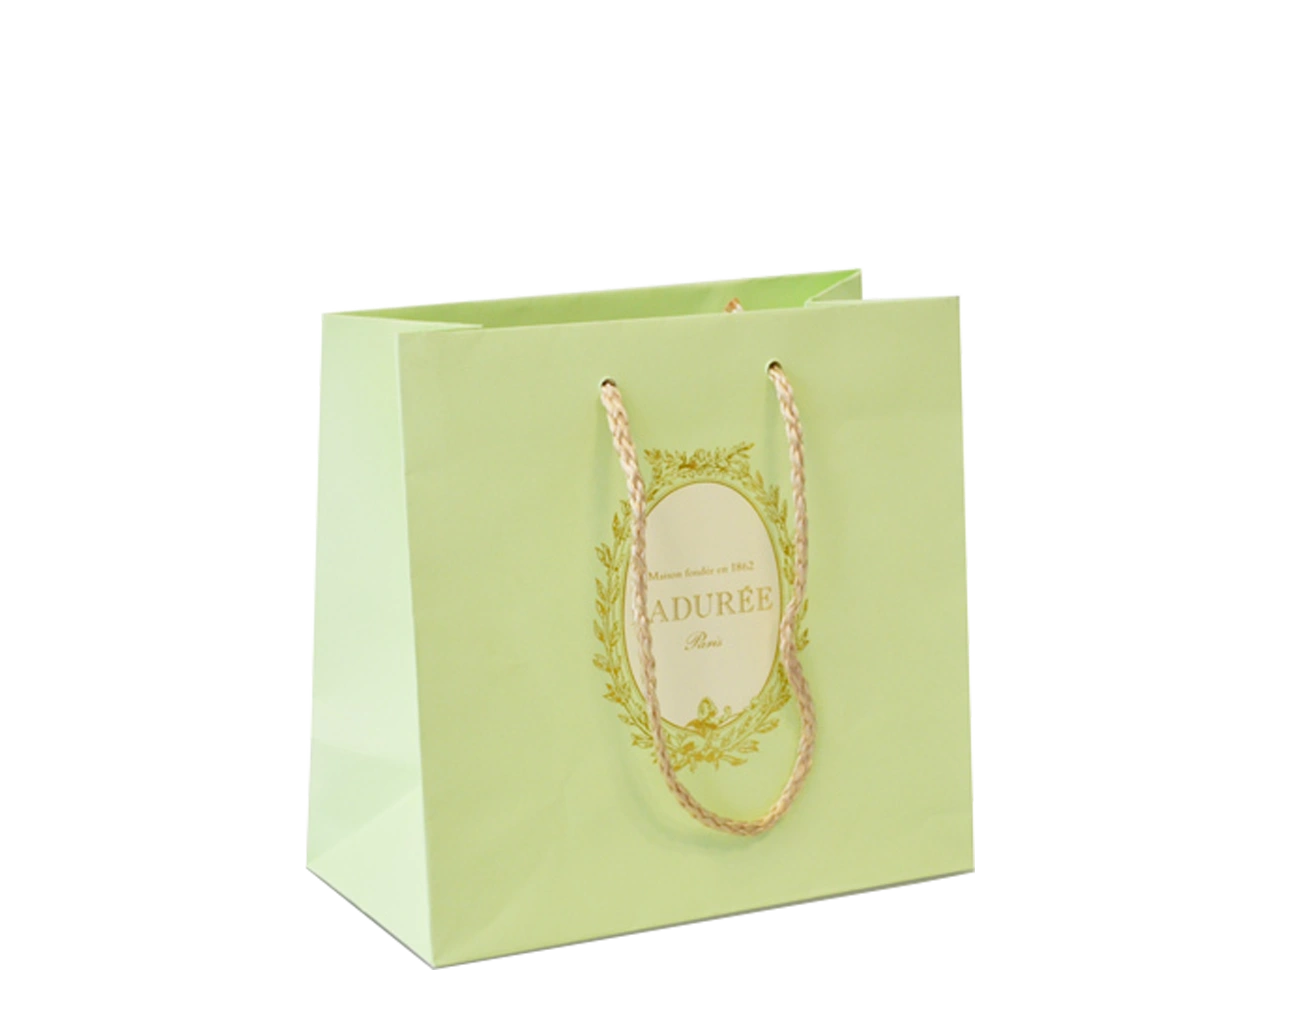 Sac Luxe Personnalisé pour Pâtisserie. Packaging luxe et raffiné, ce sac sur-mesure est écologique et dispose d'une impression en Dorure Or + poignées tressées.